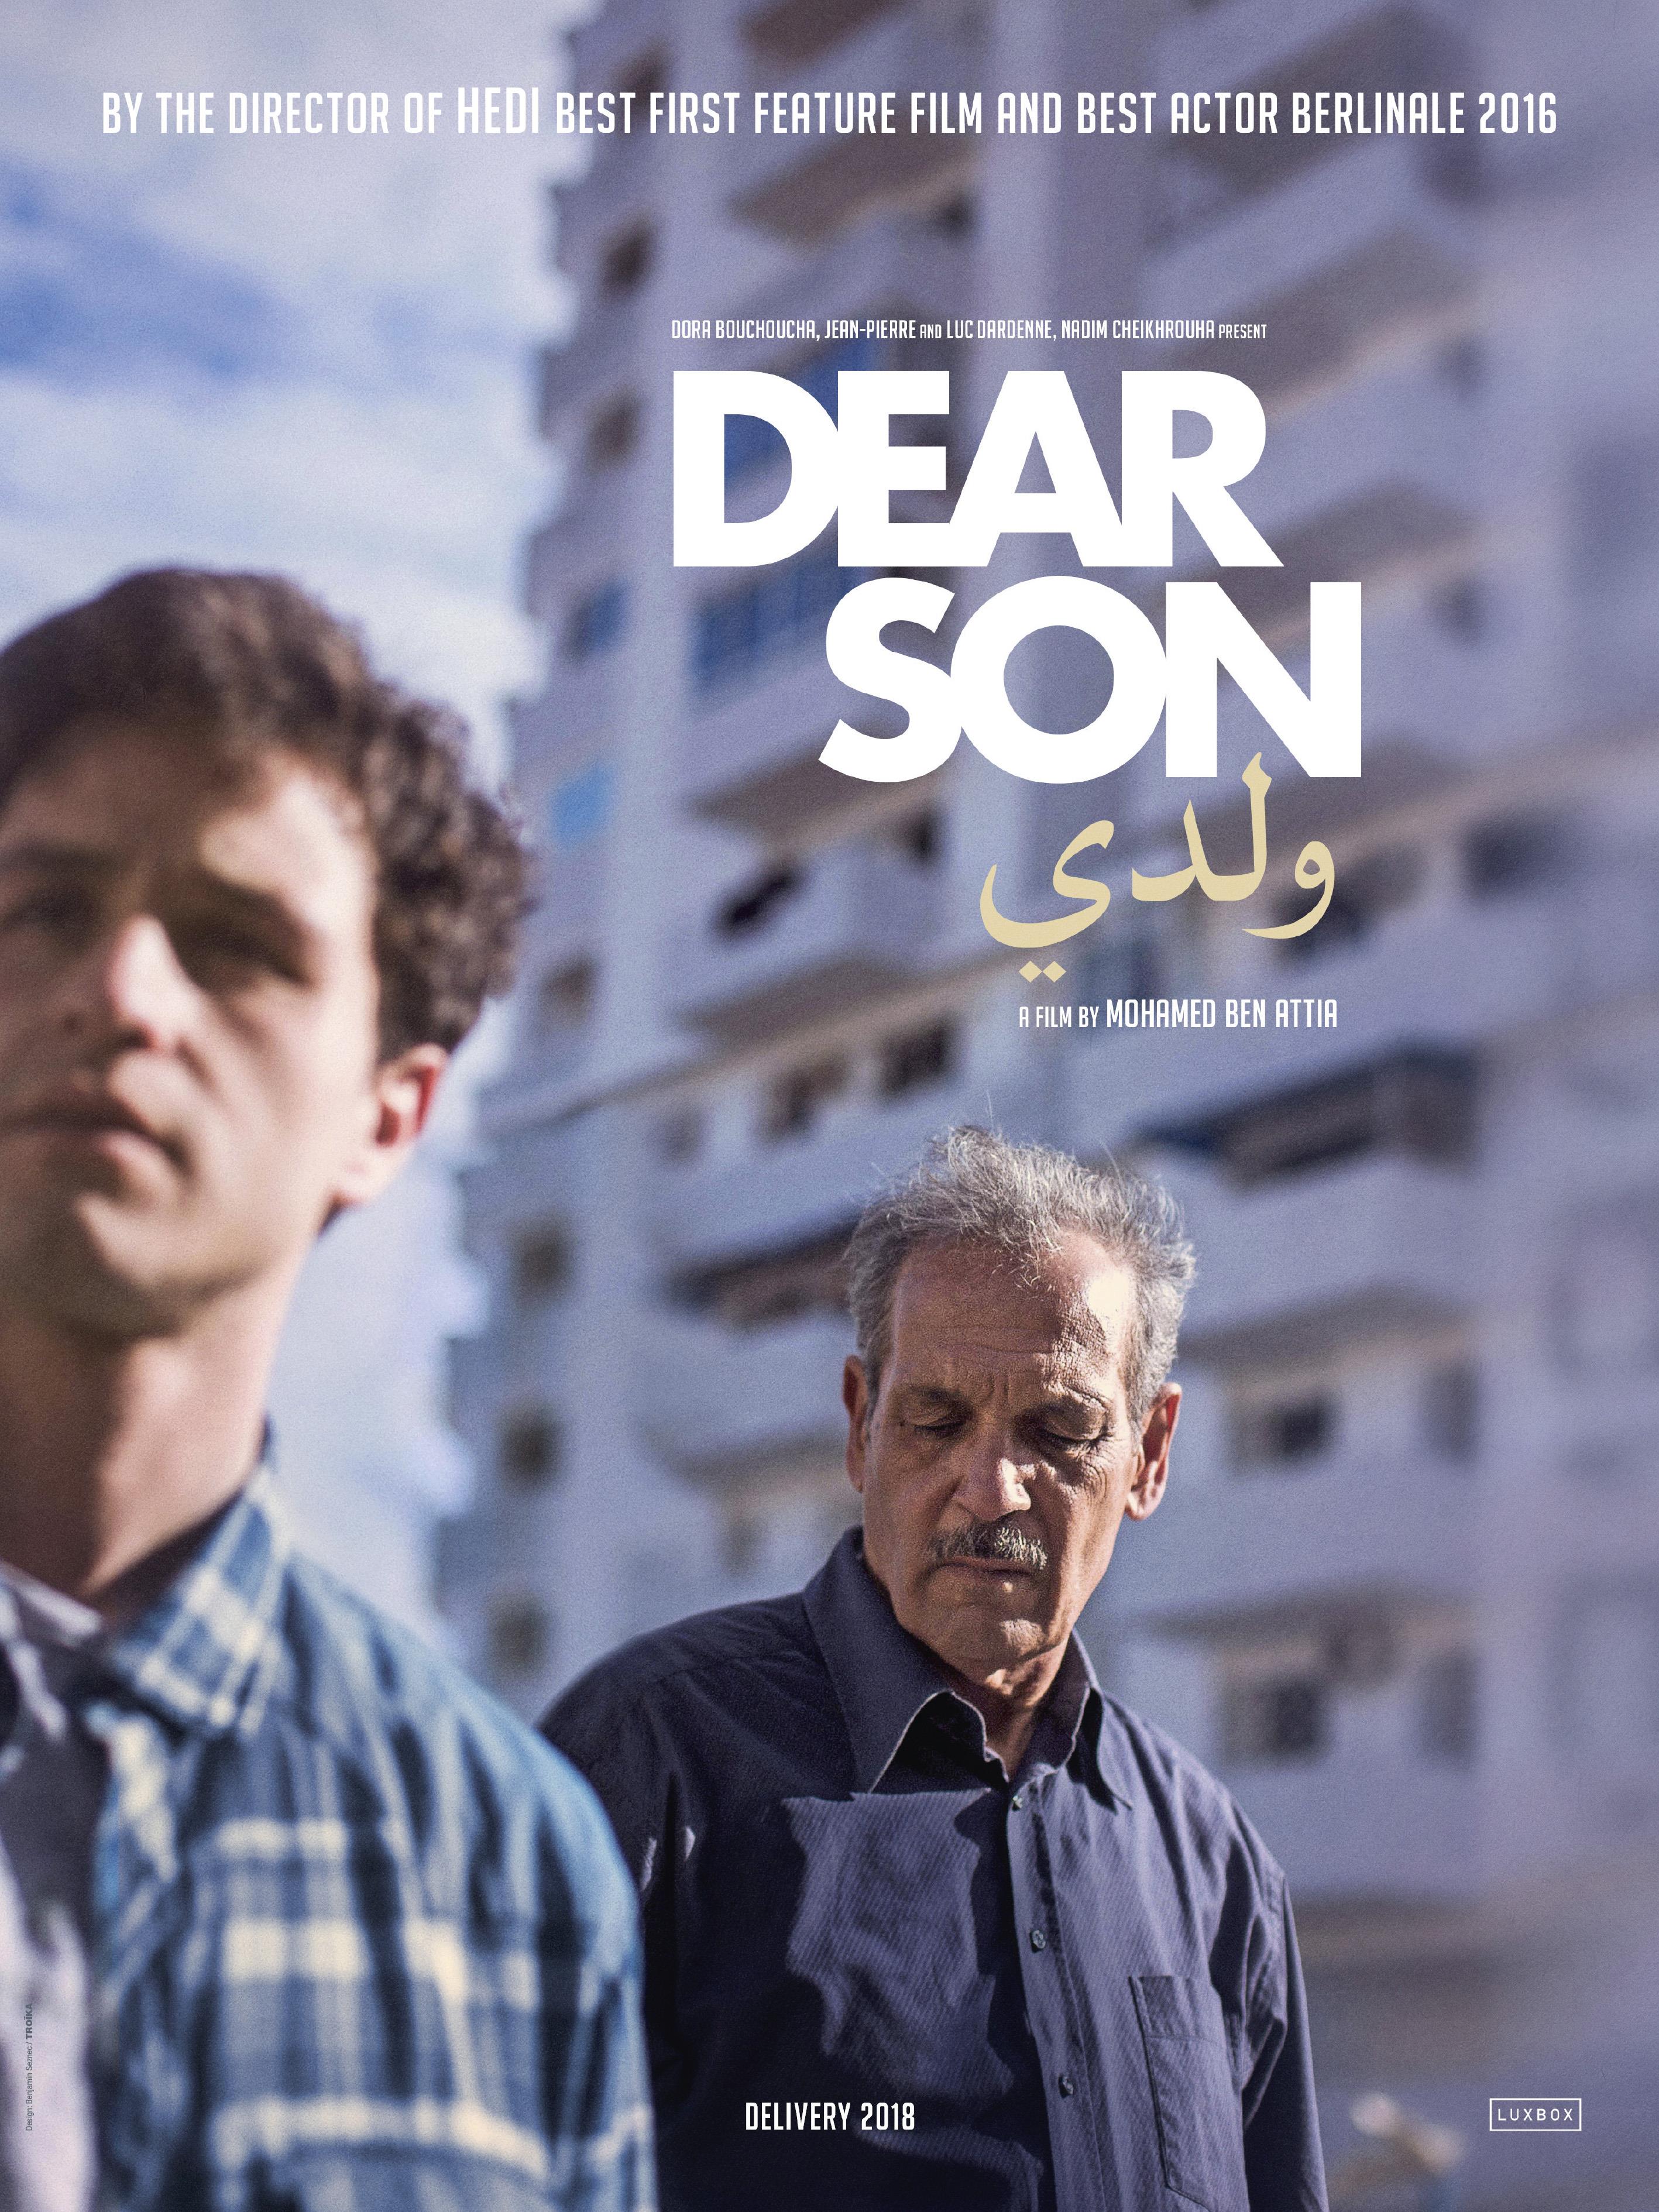 إعلان لفيلم "ولدي" للمخرج التونسي محمد بن عطية. (distributed by BAC Films)